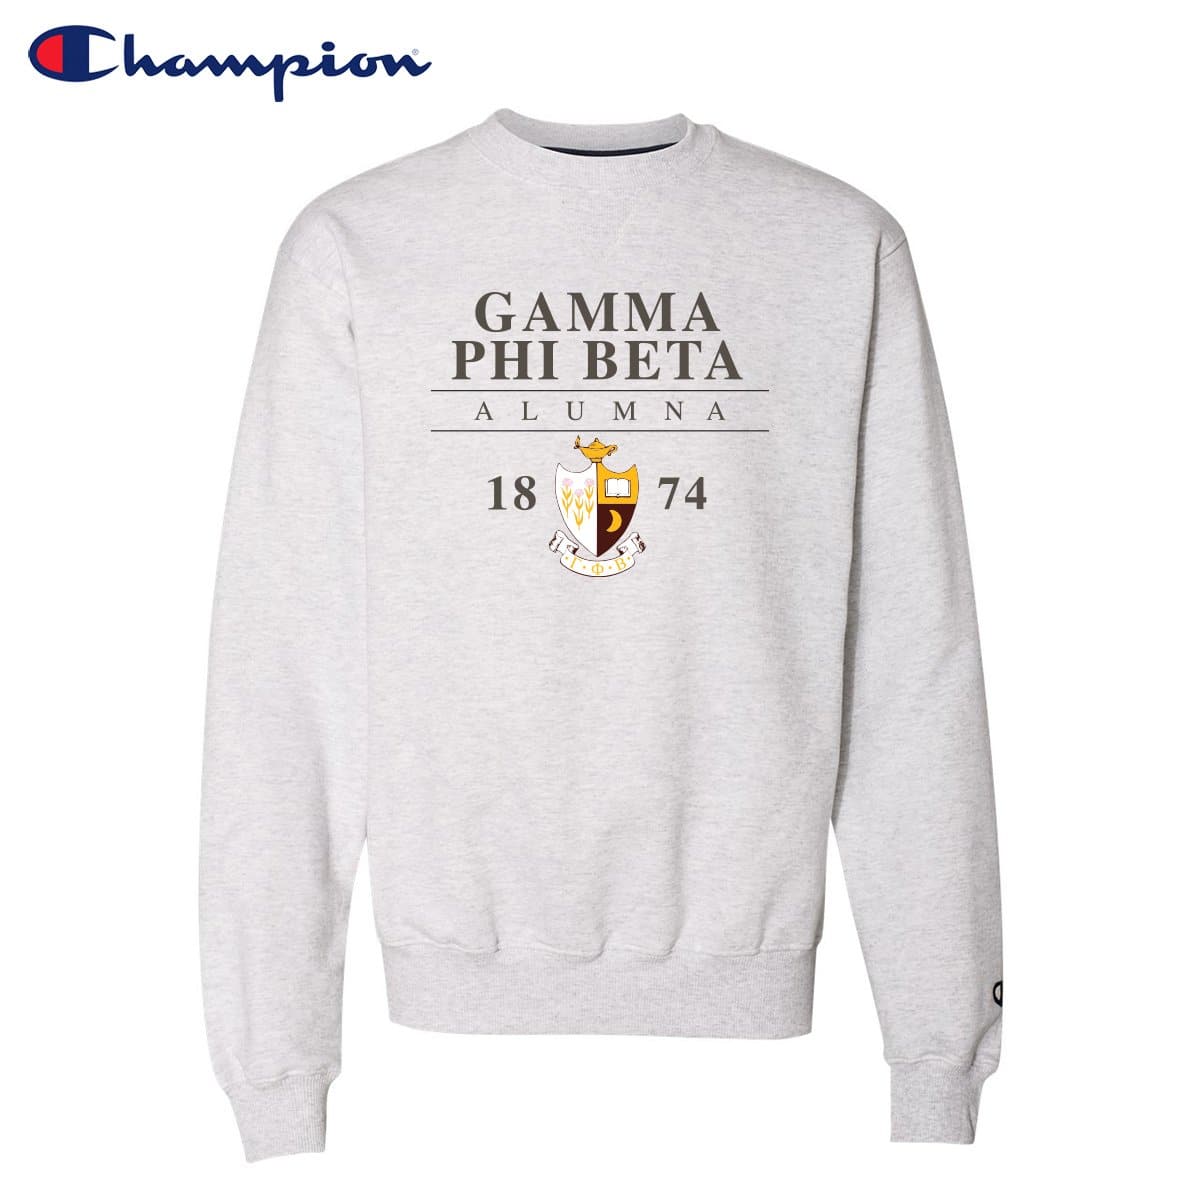 Gamma Phi Beta Alumni Champion Sweatshirt | Gamma Phi Beta | Sweatshirts > Crewneck sweatshirts